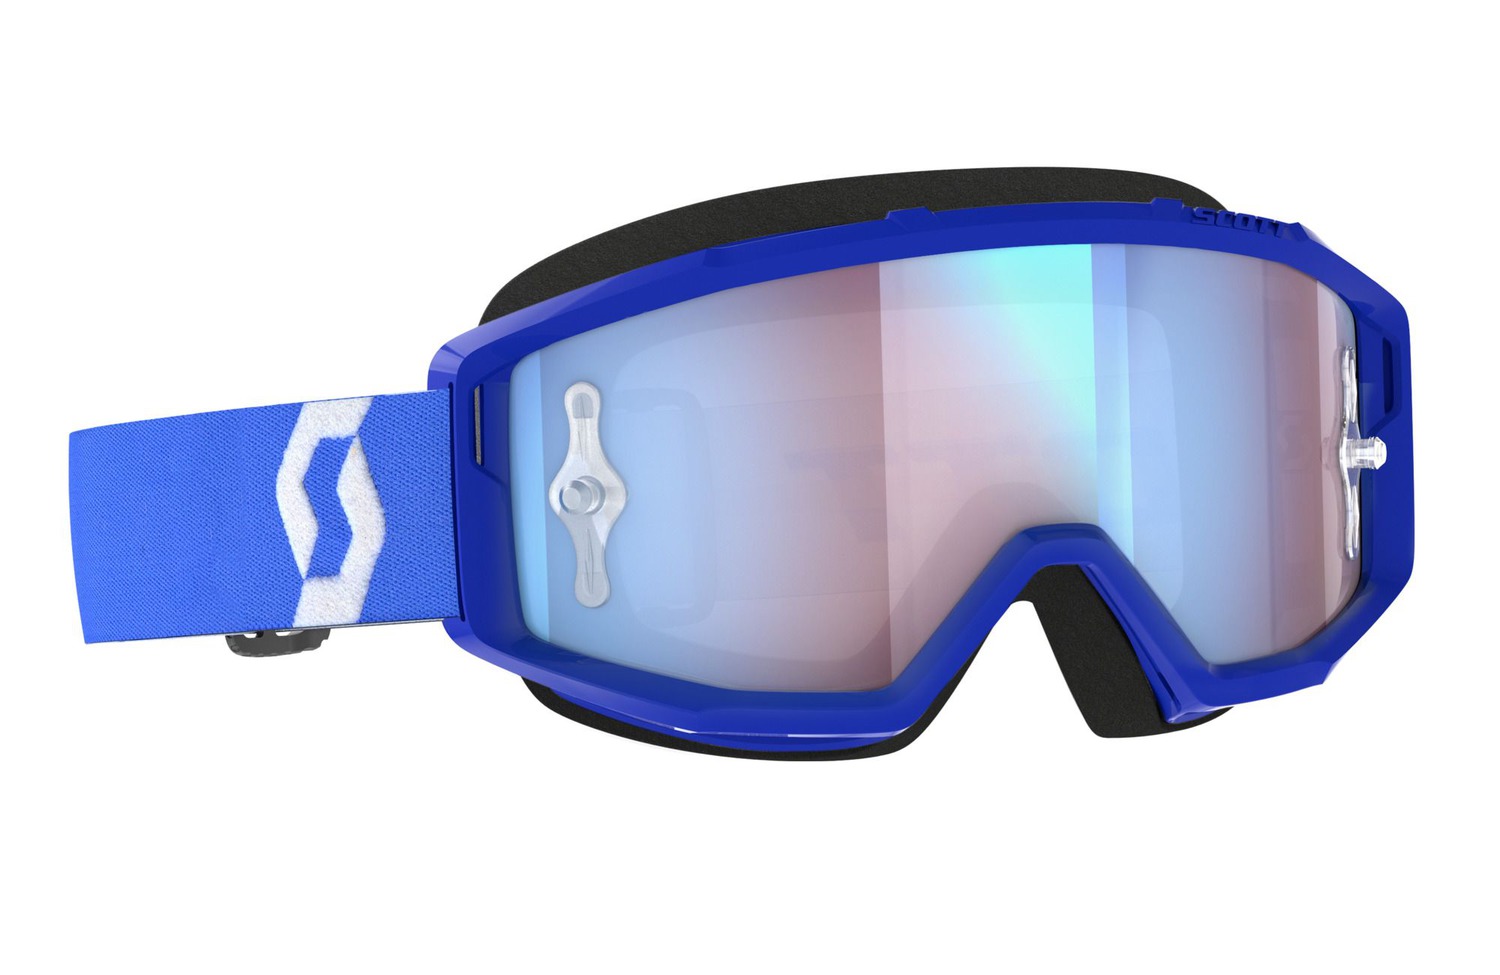 brýle PRIMAL CH modré/bílé, SCOTT - USA (plexi blue chrome)